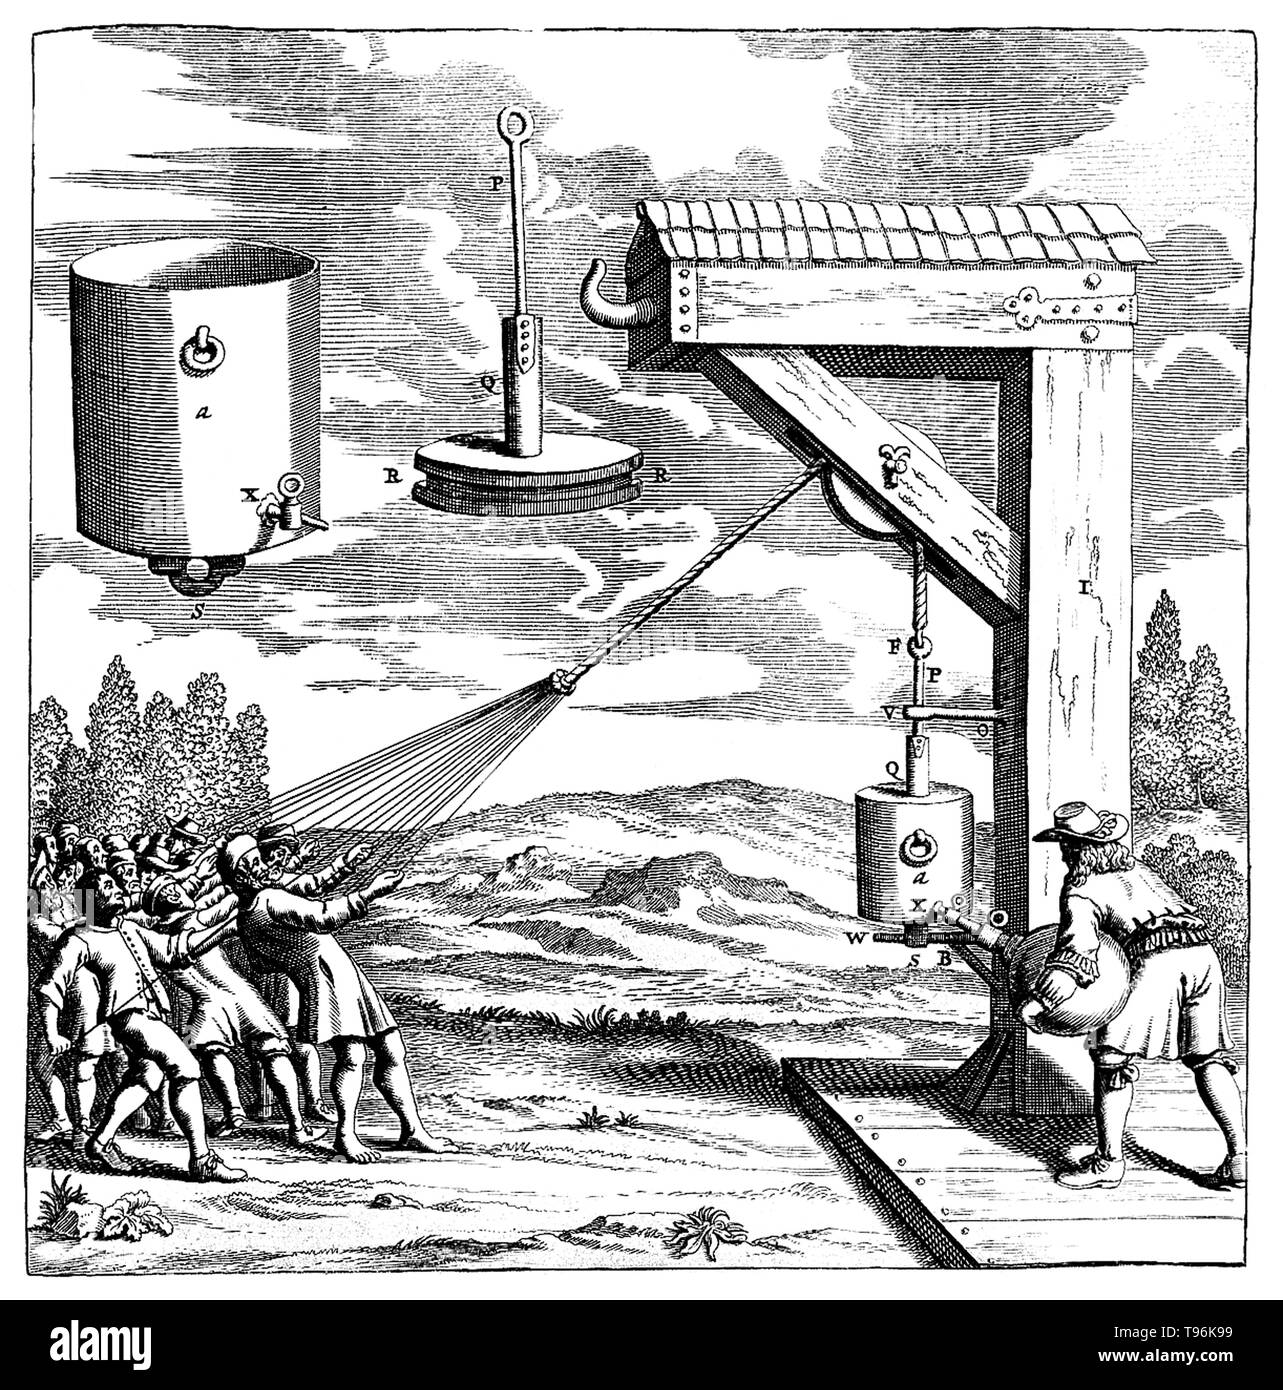 Vide piston Ratisbonne expérience réalisée en 1654. Cette démonstration de la pression atmosphérique n'avait plus de 20 hommes en tirant sur des cordes à défaut d'empêcher la fermeture d'un piston comme l'air est pompé à partir d'un cylindre, formant un vide. Otto von Guericke (Novembre 30, 1602 - Mai 21, 1686) était un scientifique allemand, inventeur et homme politique américain. Banque D'Images